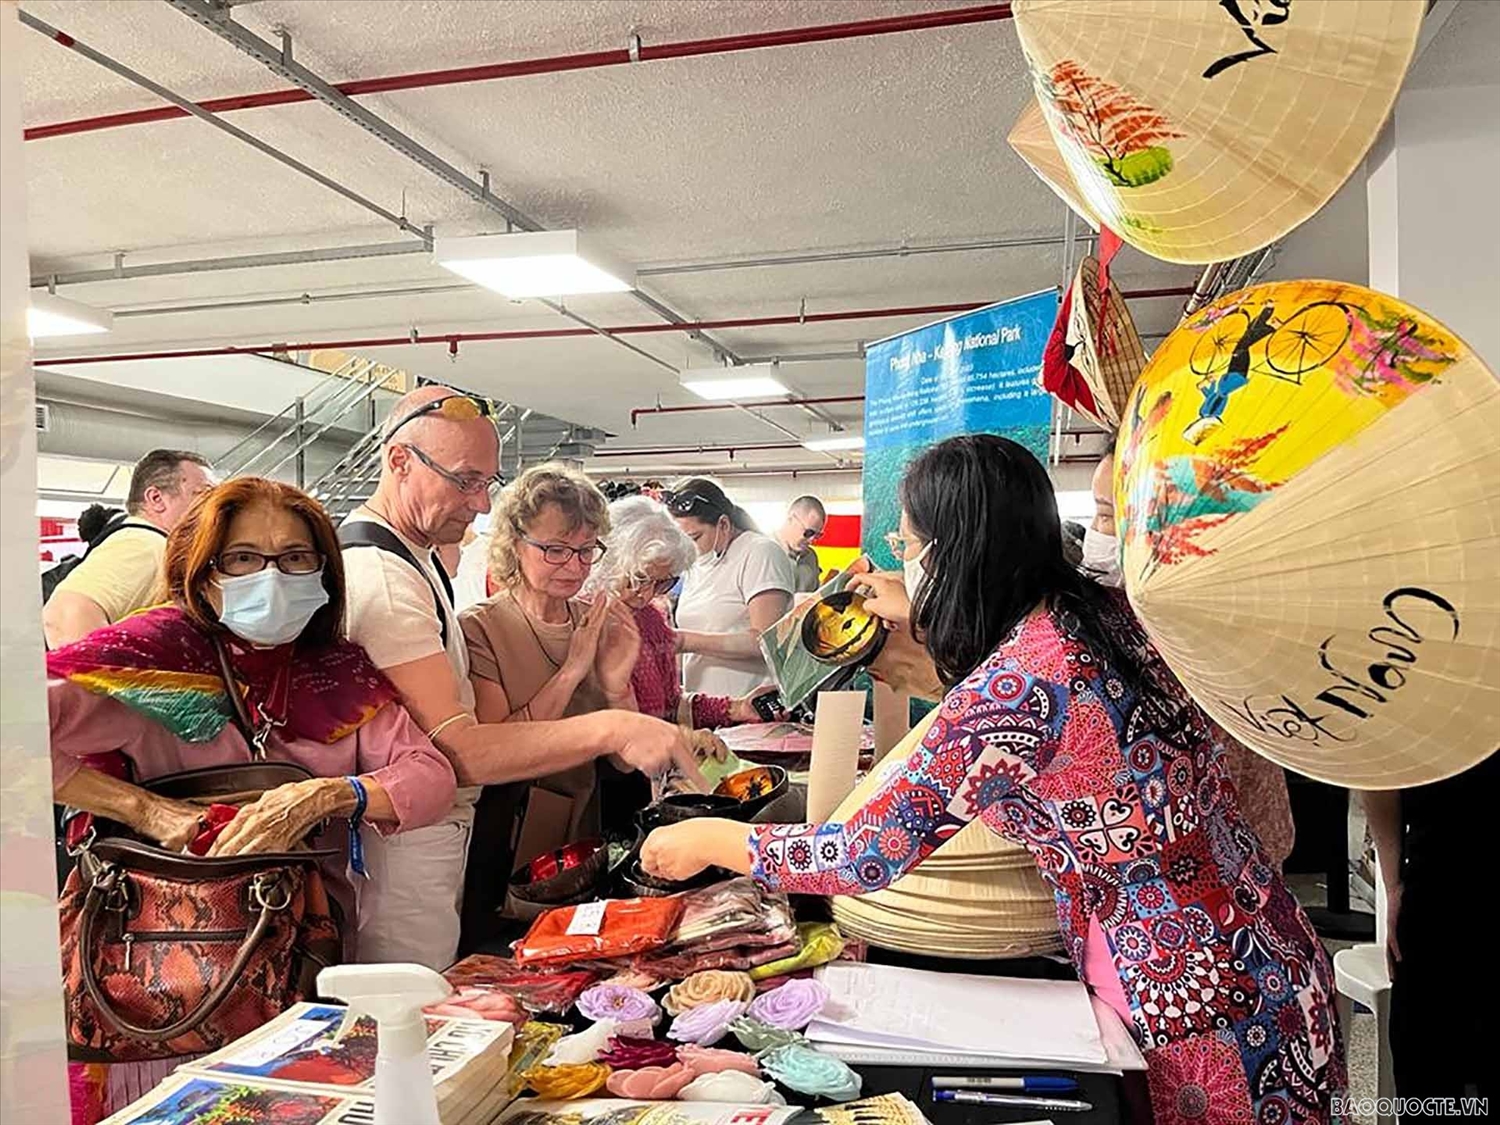 Gian hàng các sản phẩm của Việt Nam tại hội chợ.